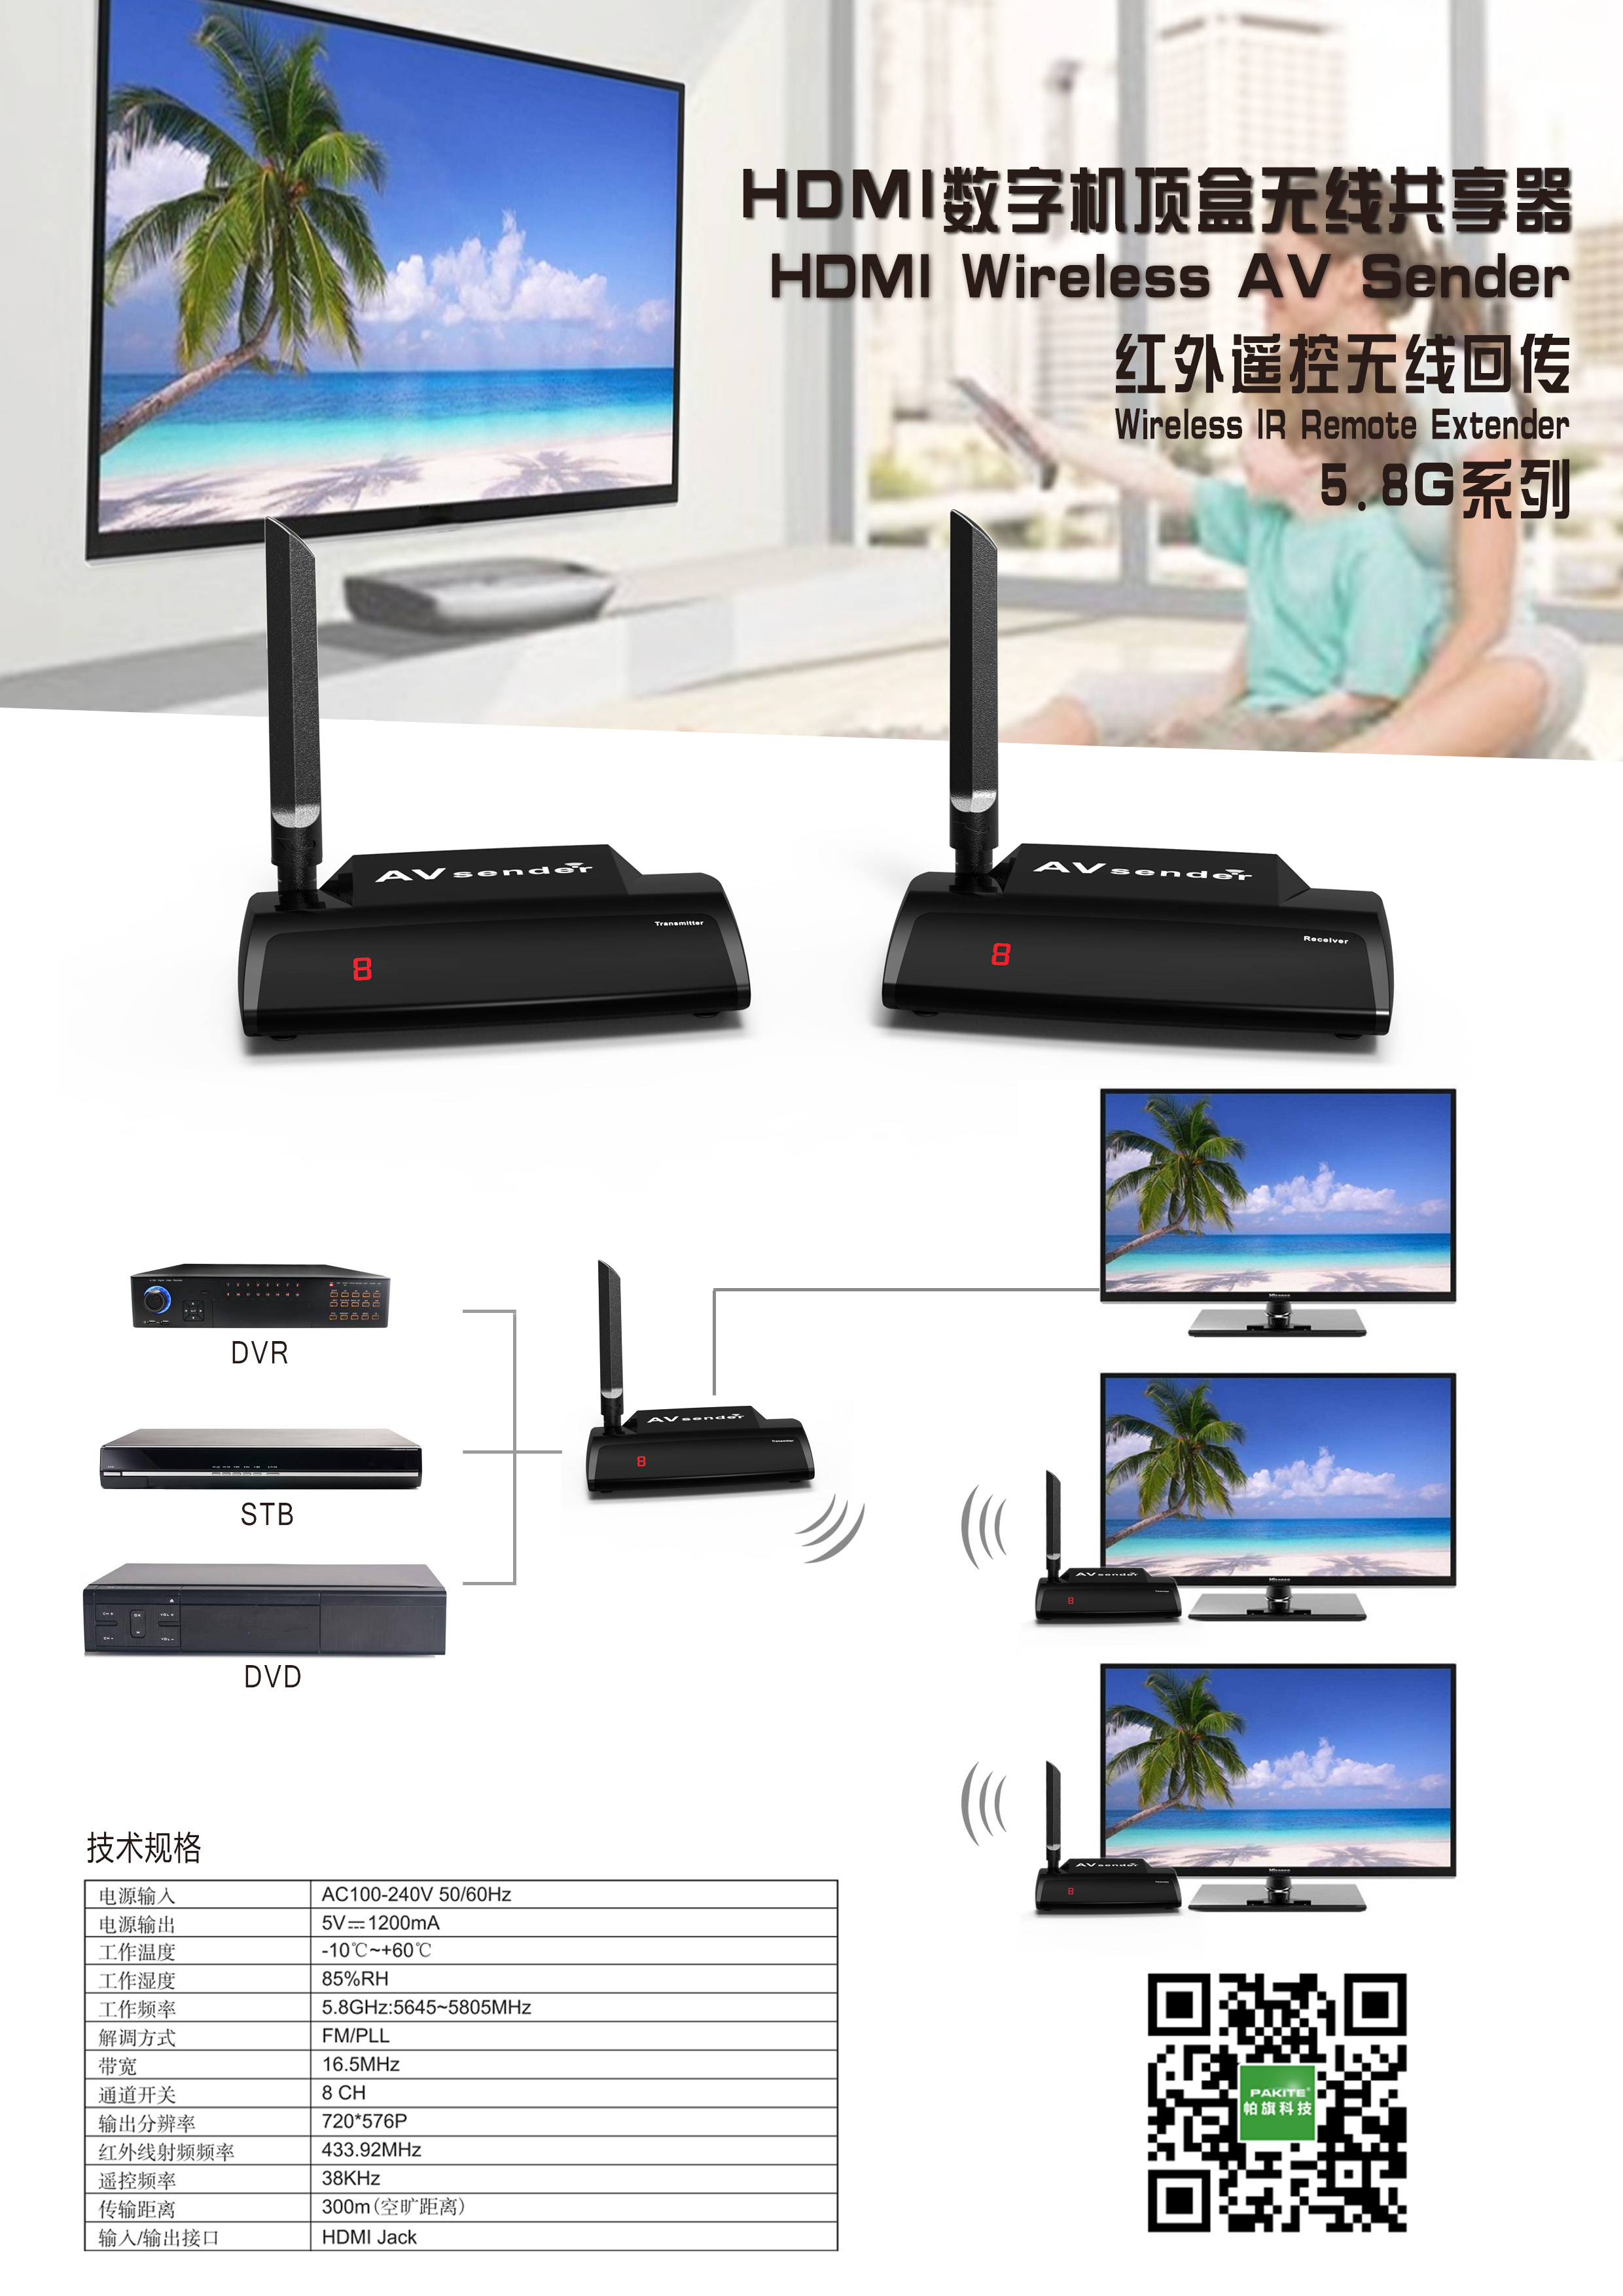 HDMI中文.jpg